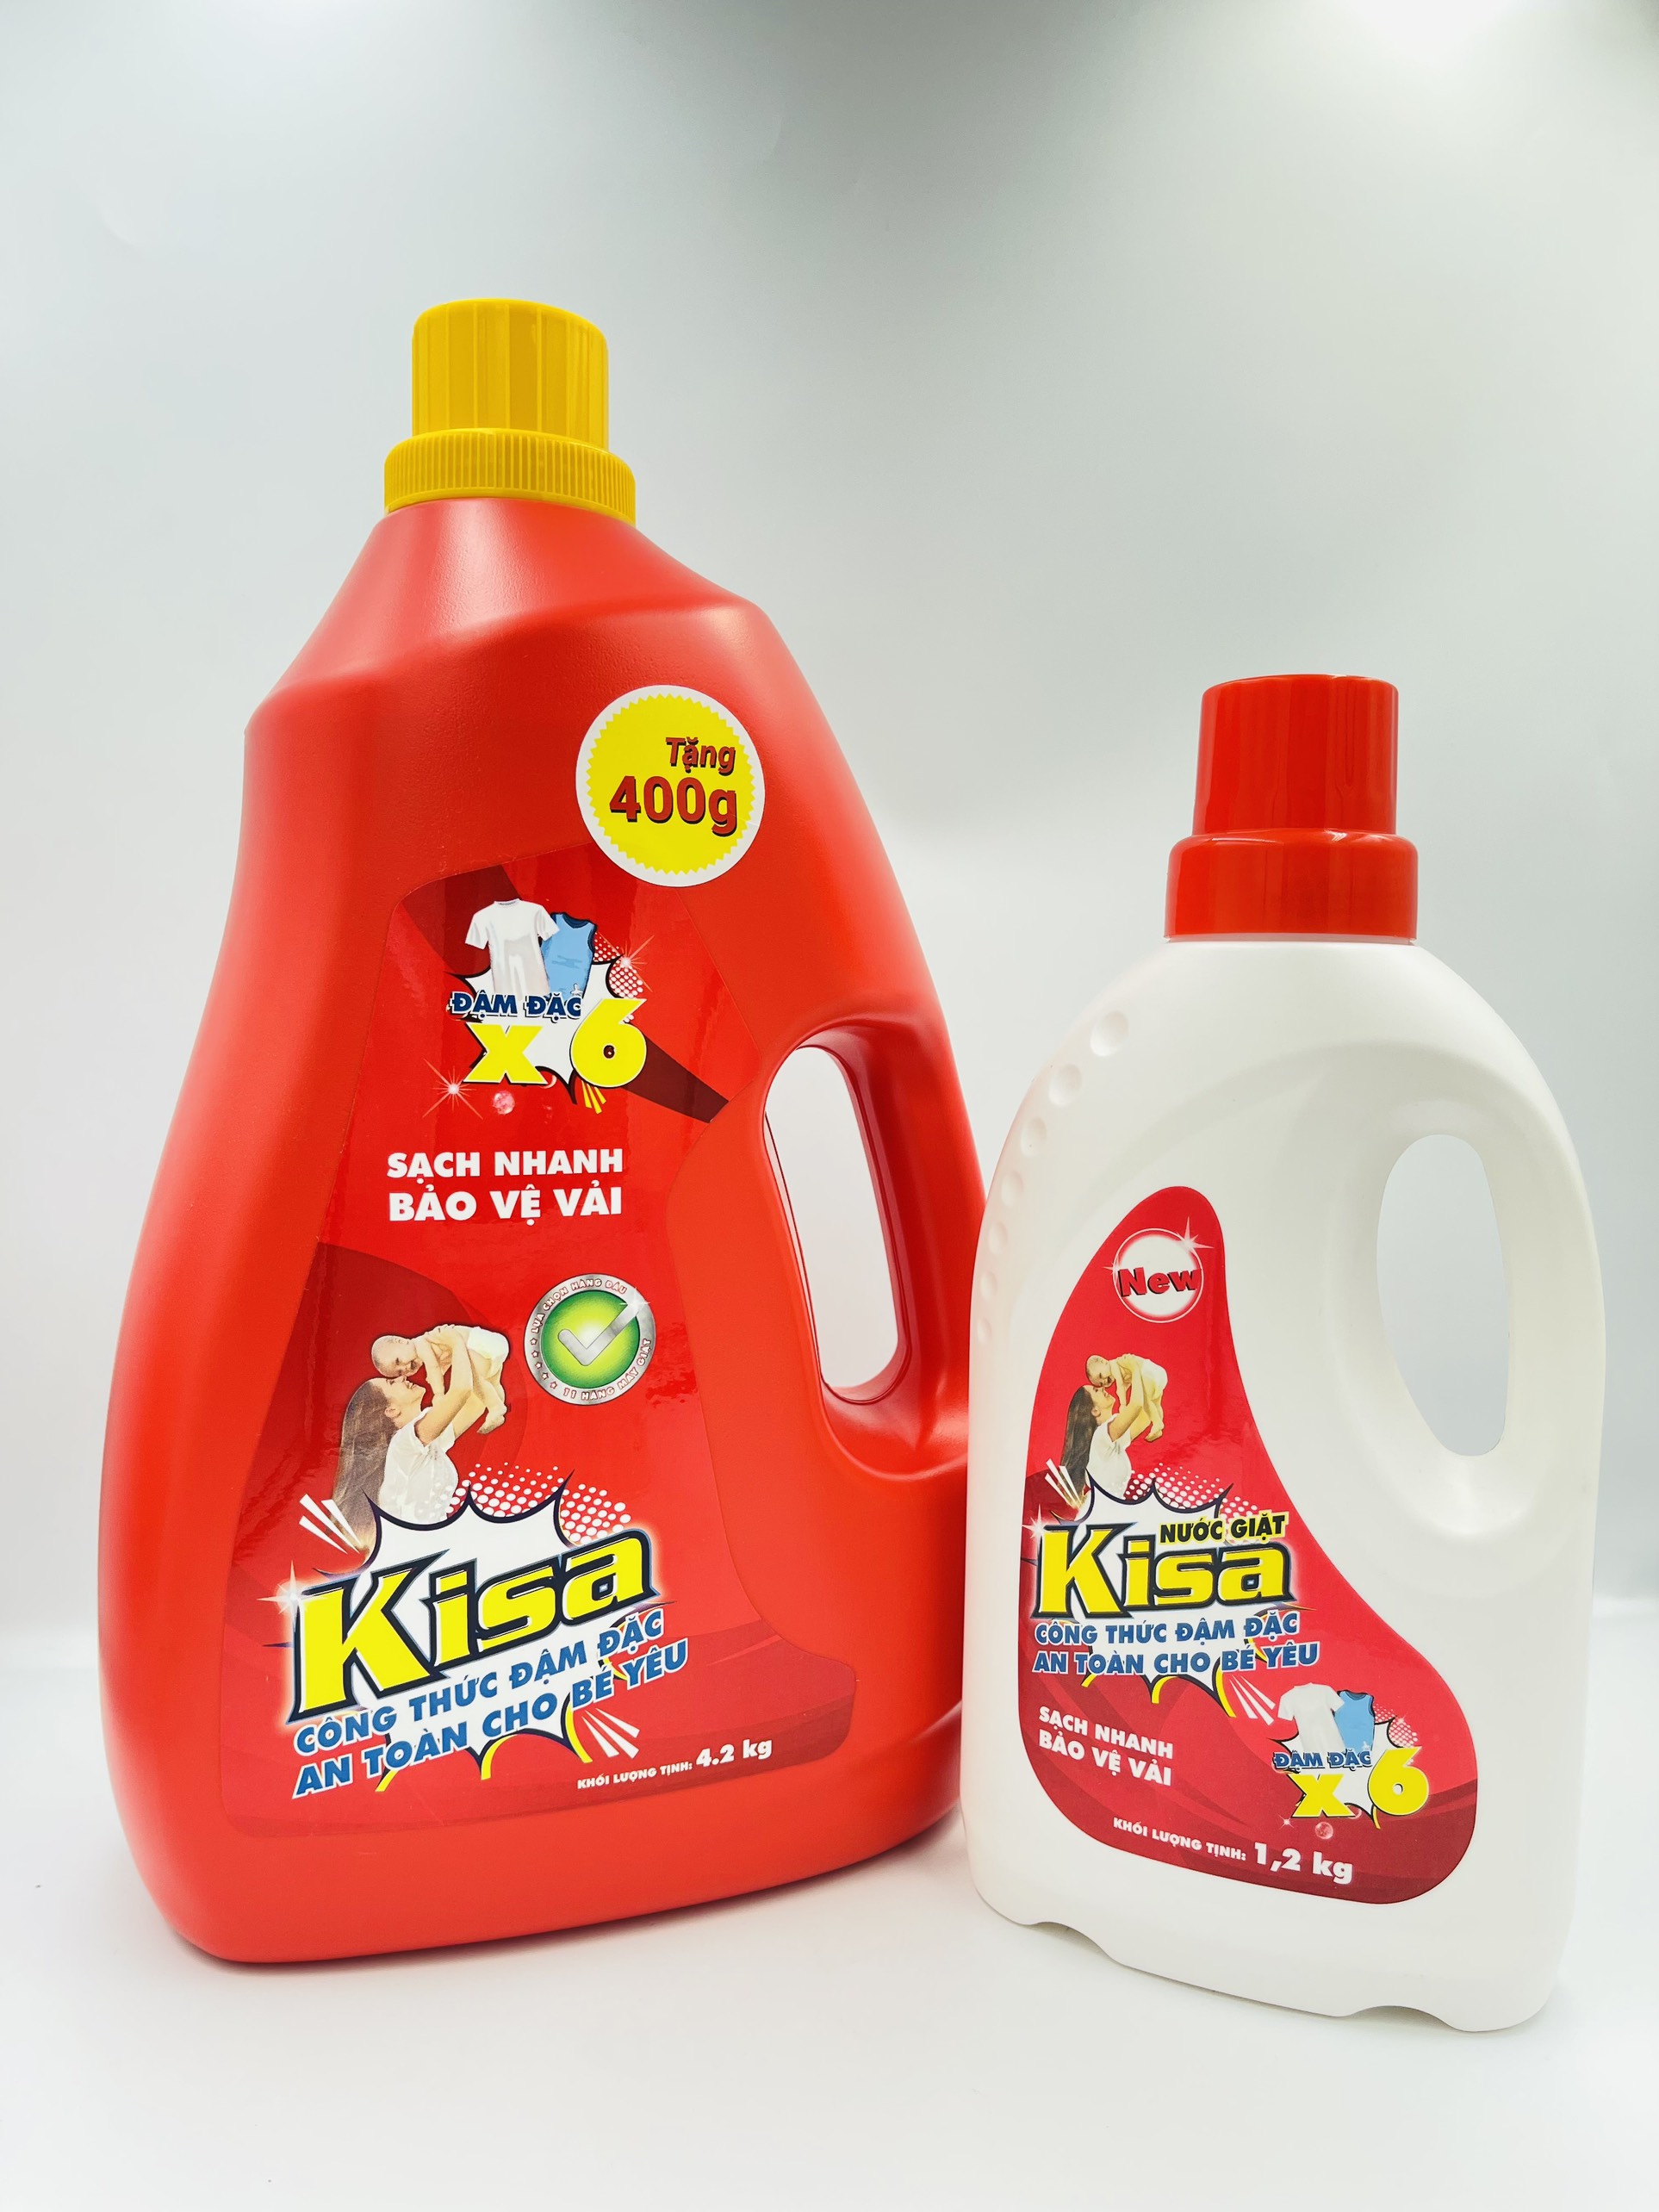 Nước giặt đậm đặc Kisa 4.2 kg -  An toàn cho bé yêu